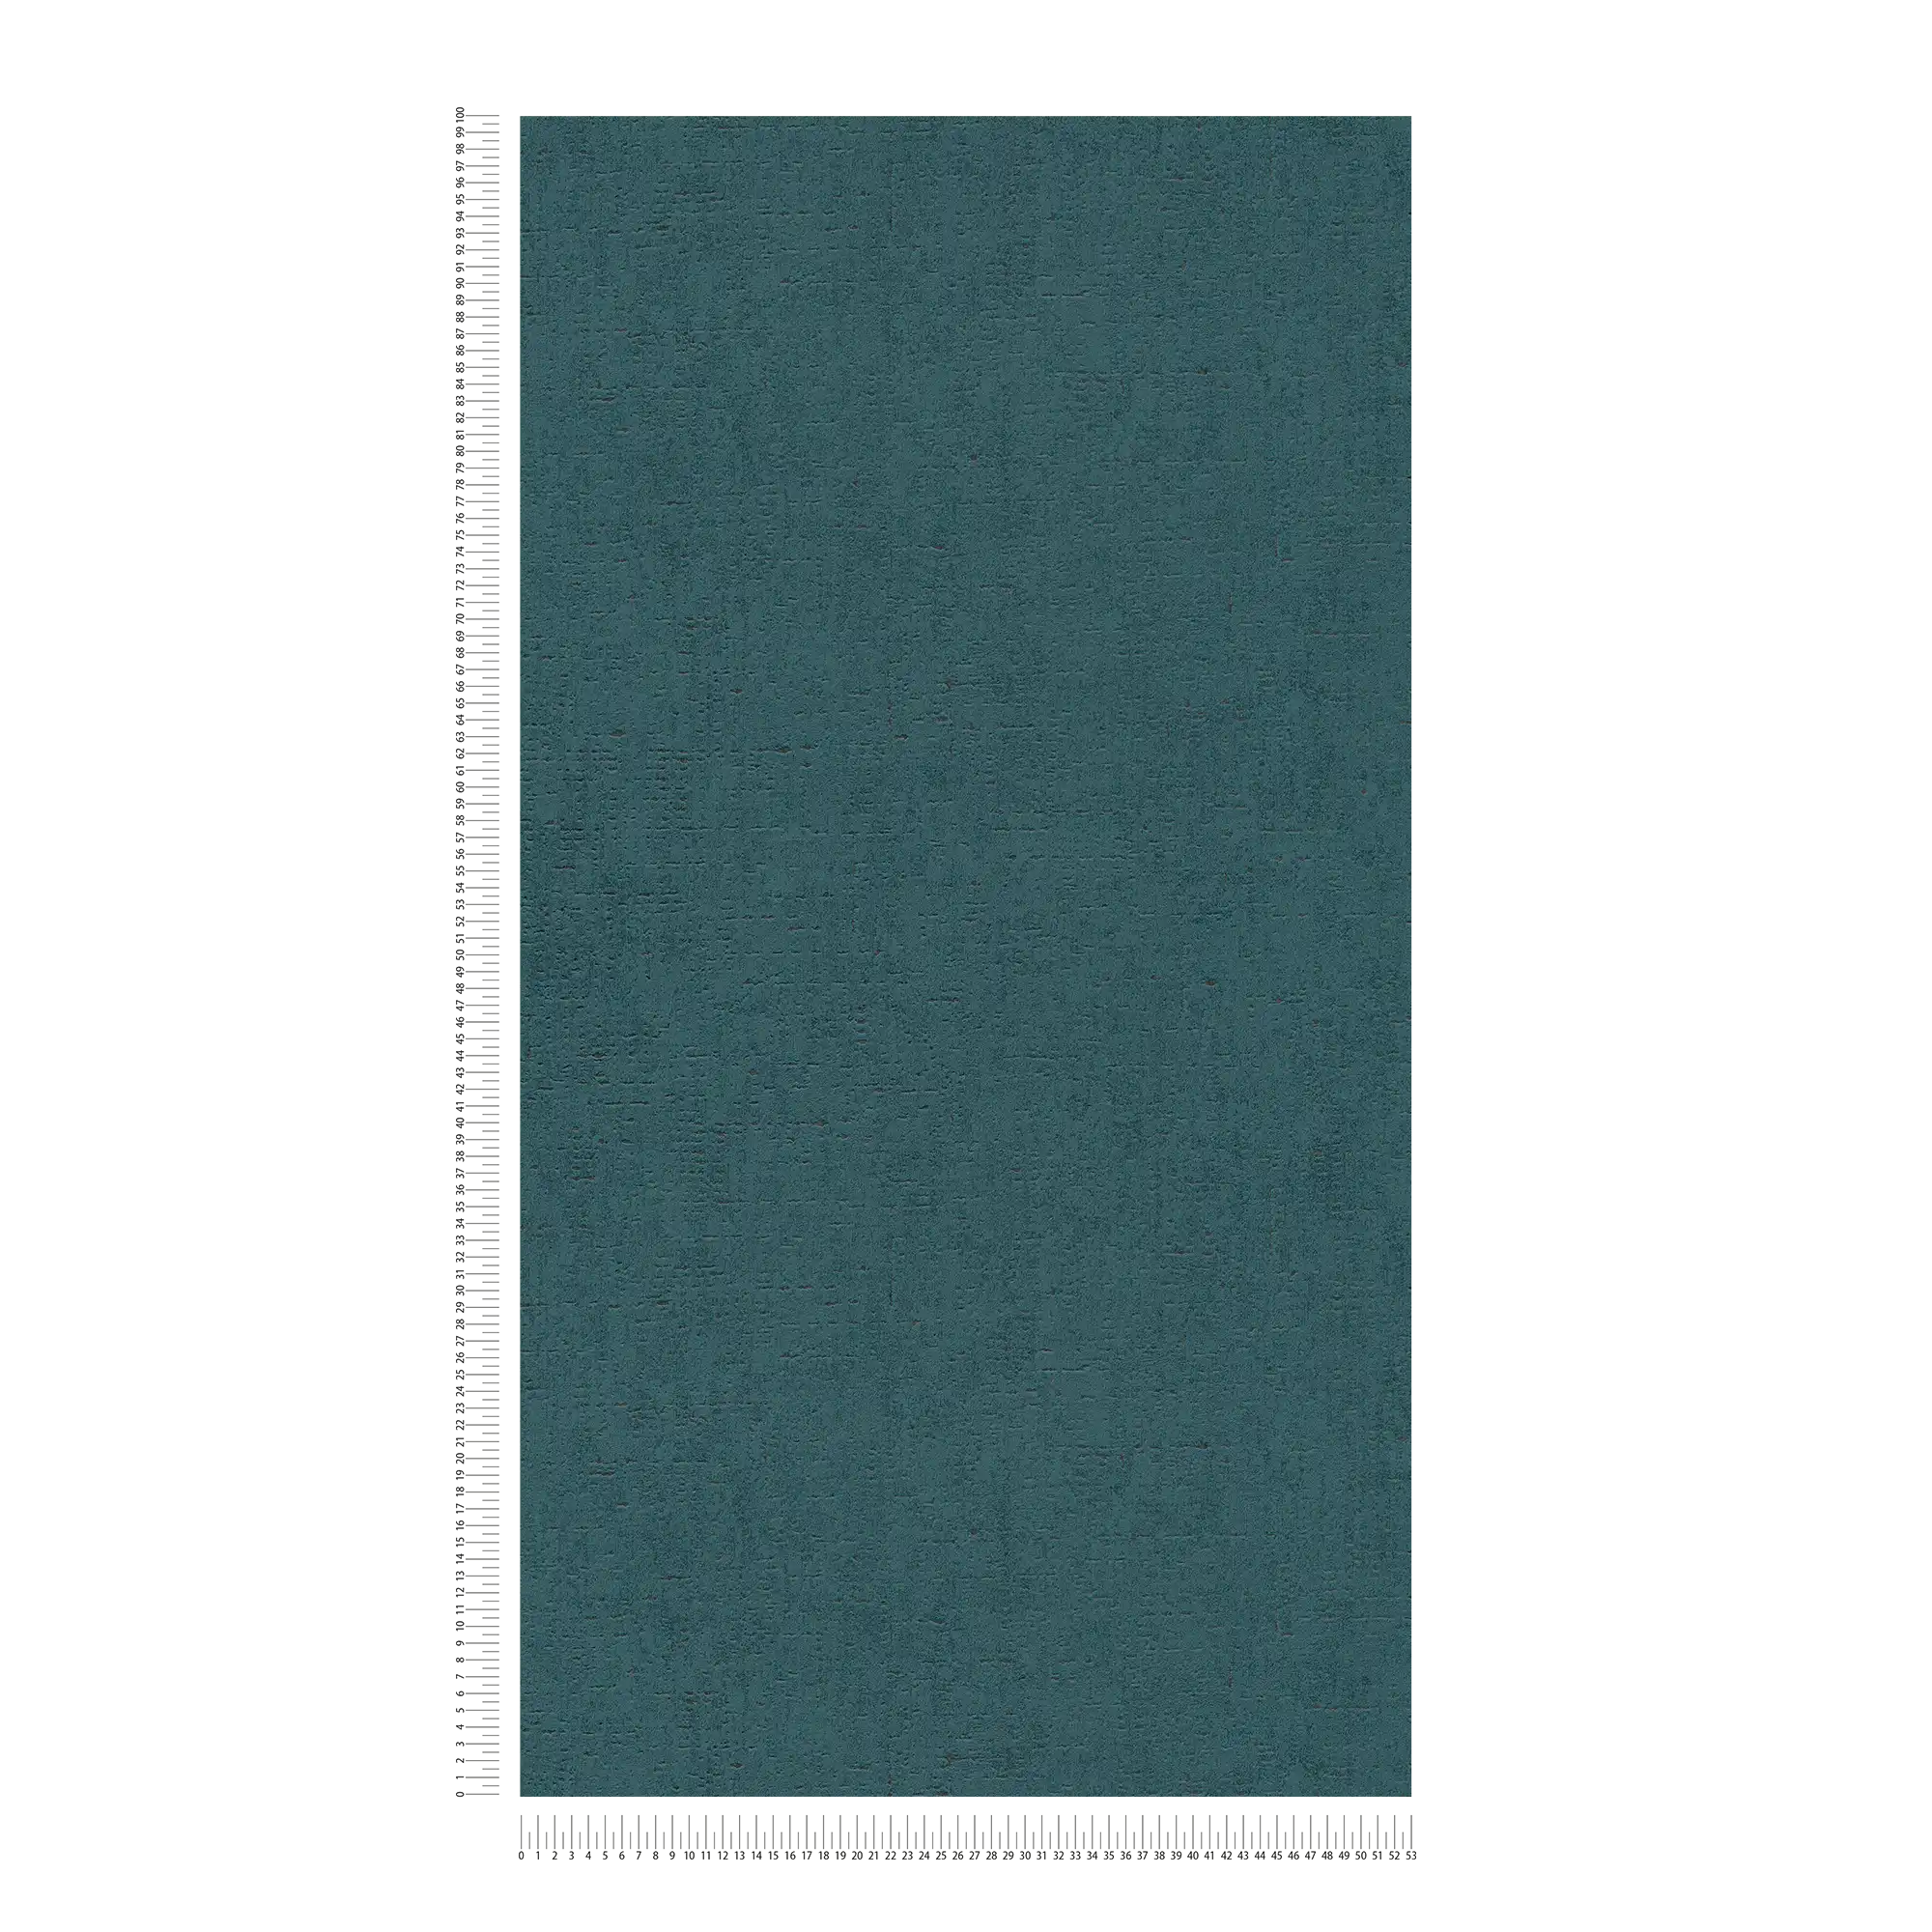             Petrolkleurig behang met gevlekte structuur - blauw, groen
        